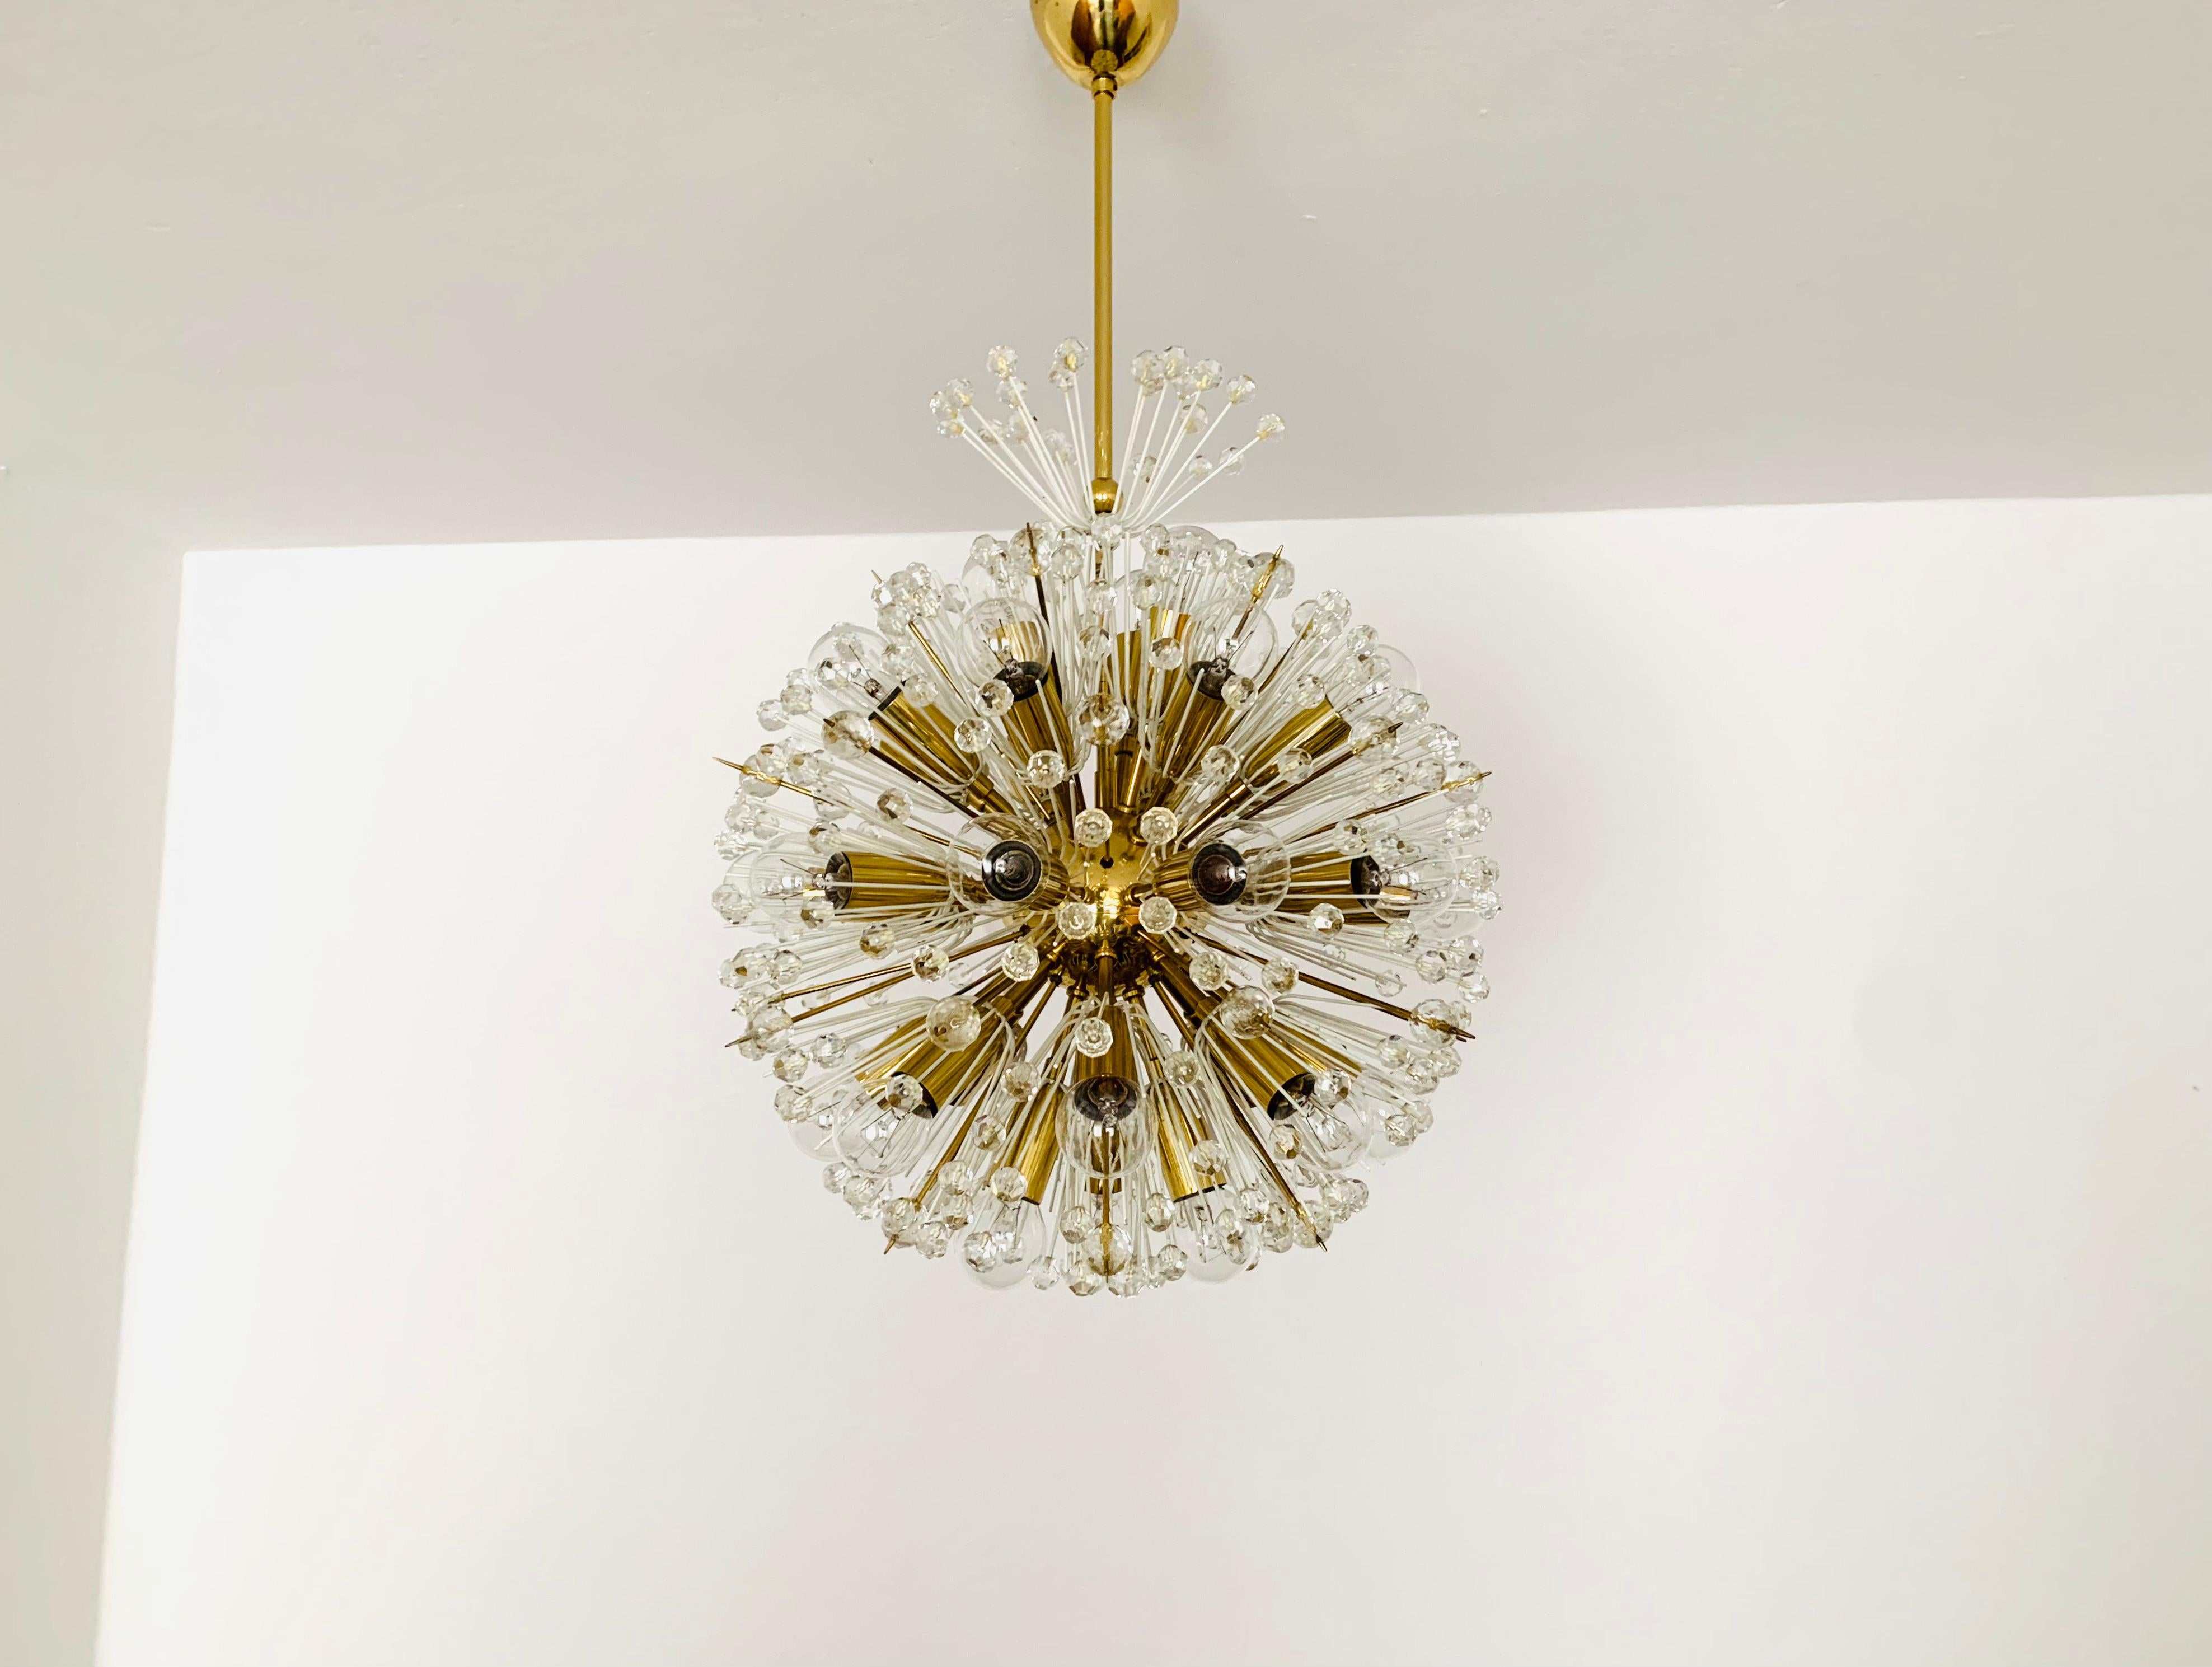 Merveilleux lustre des années 1950.
La lampe, avec ses fleurs richement décorées et ses détails en laiton, a un aspect très luxueux et brille particulièrement bien.
Le design et les matériaux utilisés créent une grande lumière scintillante.
Une